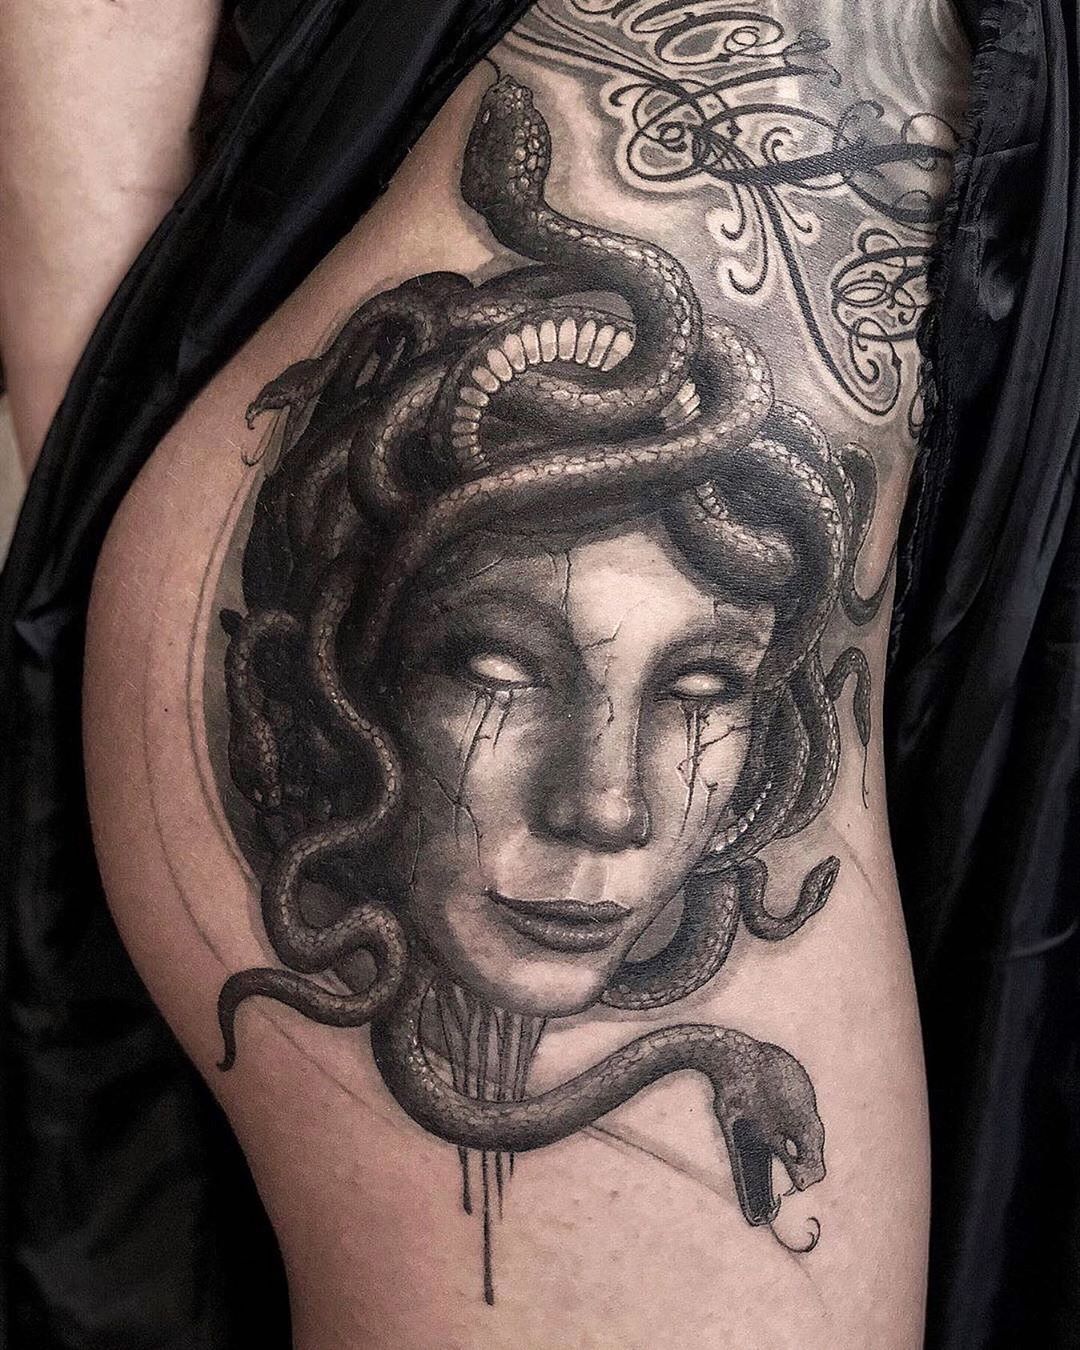 Realism Medusa Tattoo Idea  BlackInk